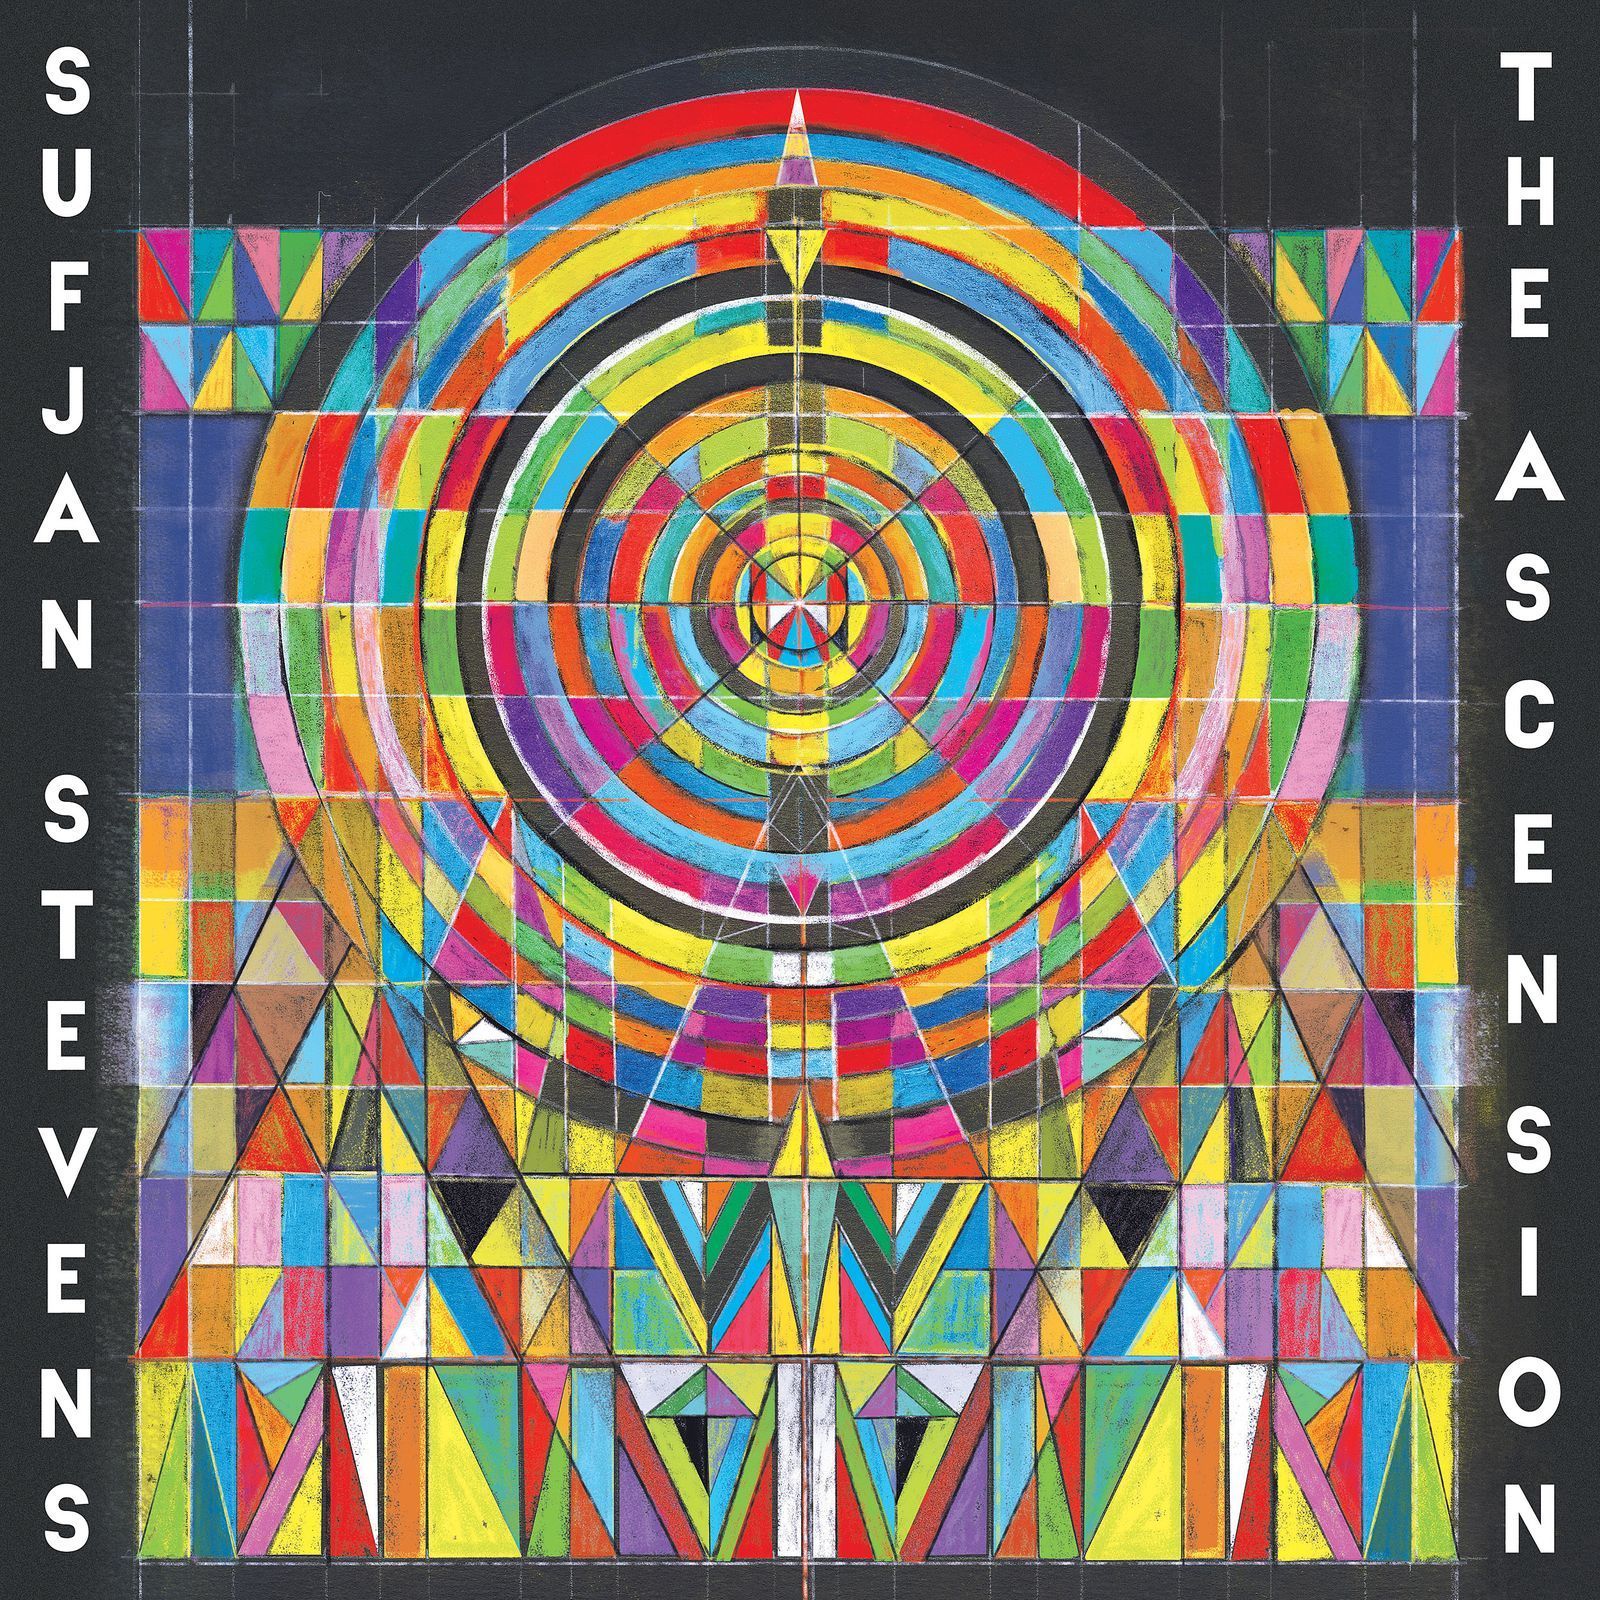 Sufjan Stevens: The Ascension